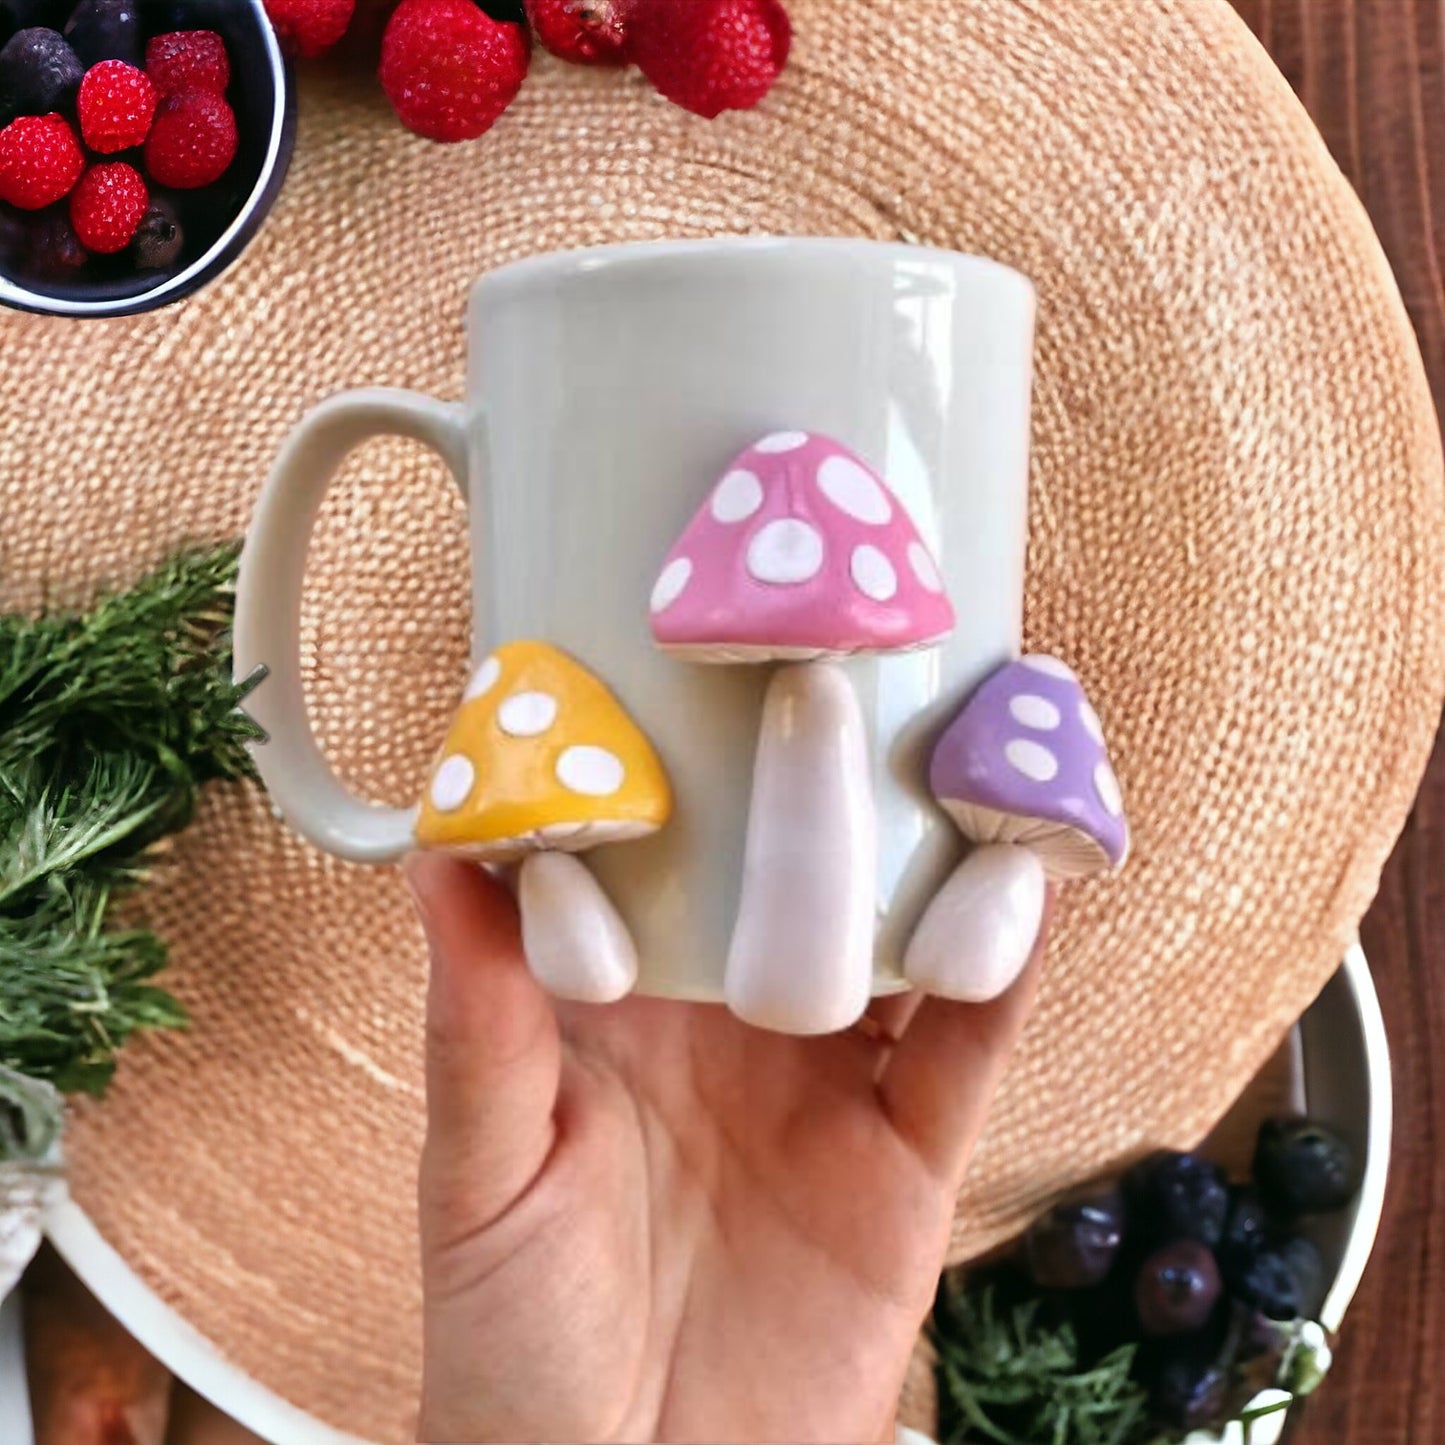 Tri-Mushroom Coffee Mug